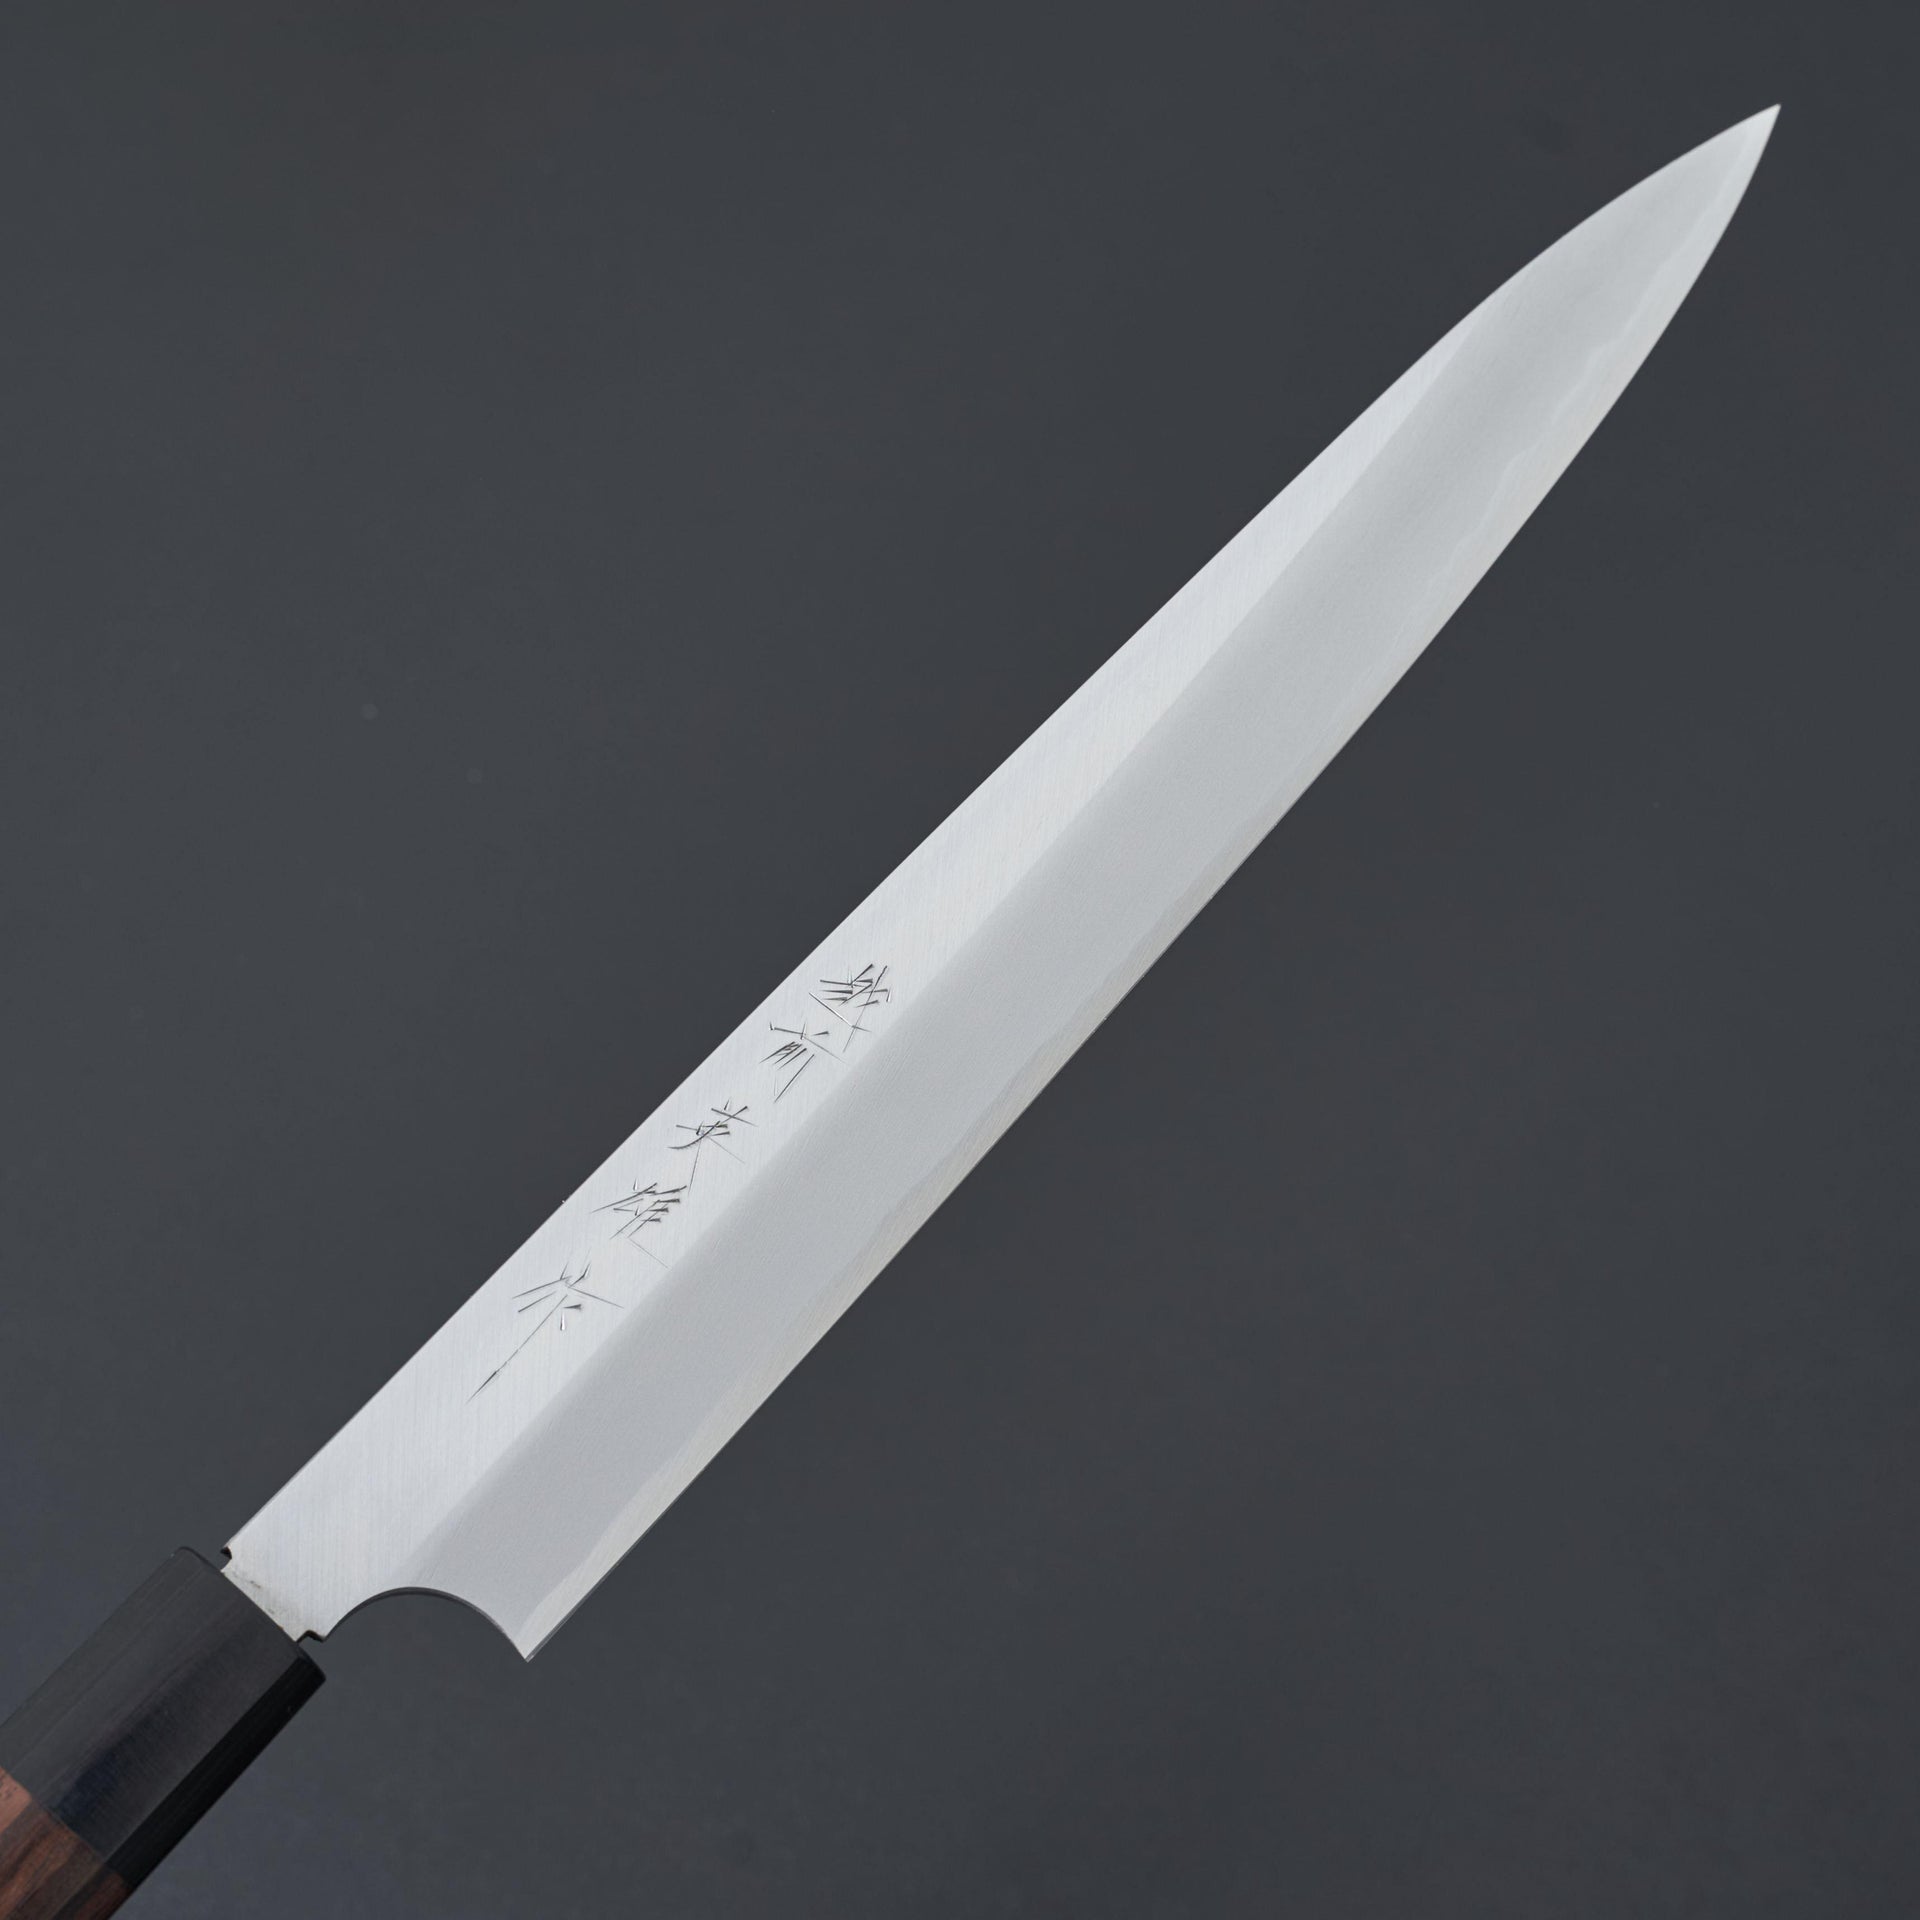 Kitaoka Blue #2 Yanagiba 270mm-Knife-Kitaoka-Carbon Knife Co